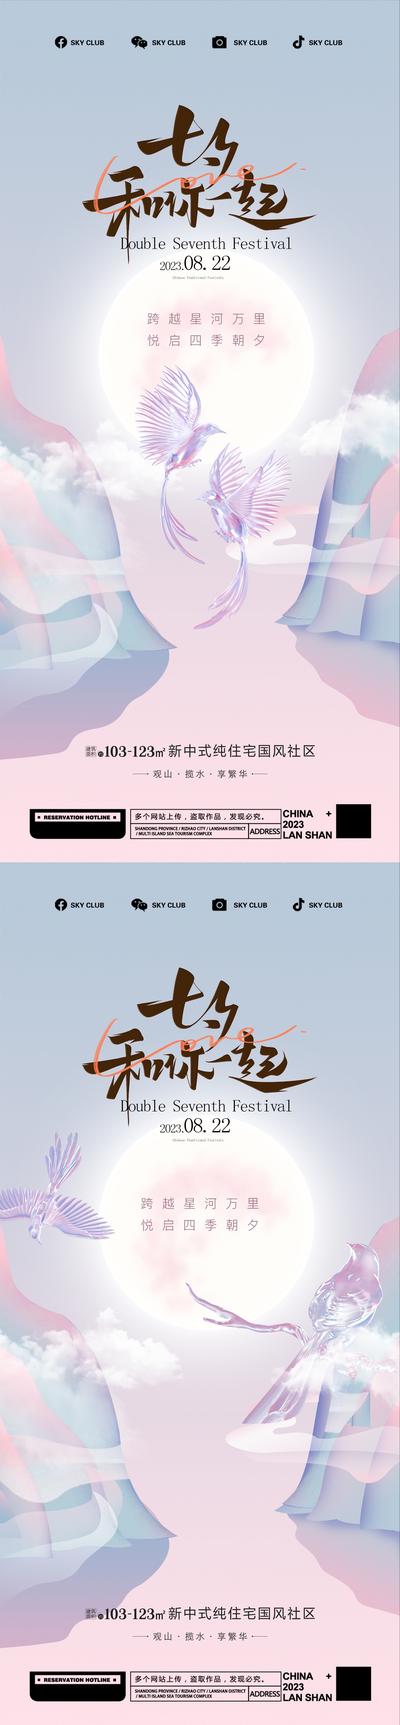 南门网 广告 海报 节日 七夕 情人节 中国传统节日 相约七夕 爱情 情侣 喜鹊 系列